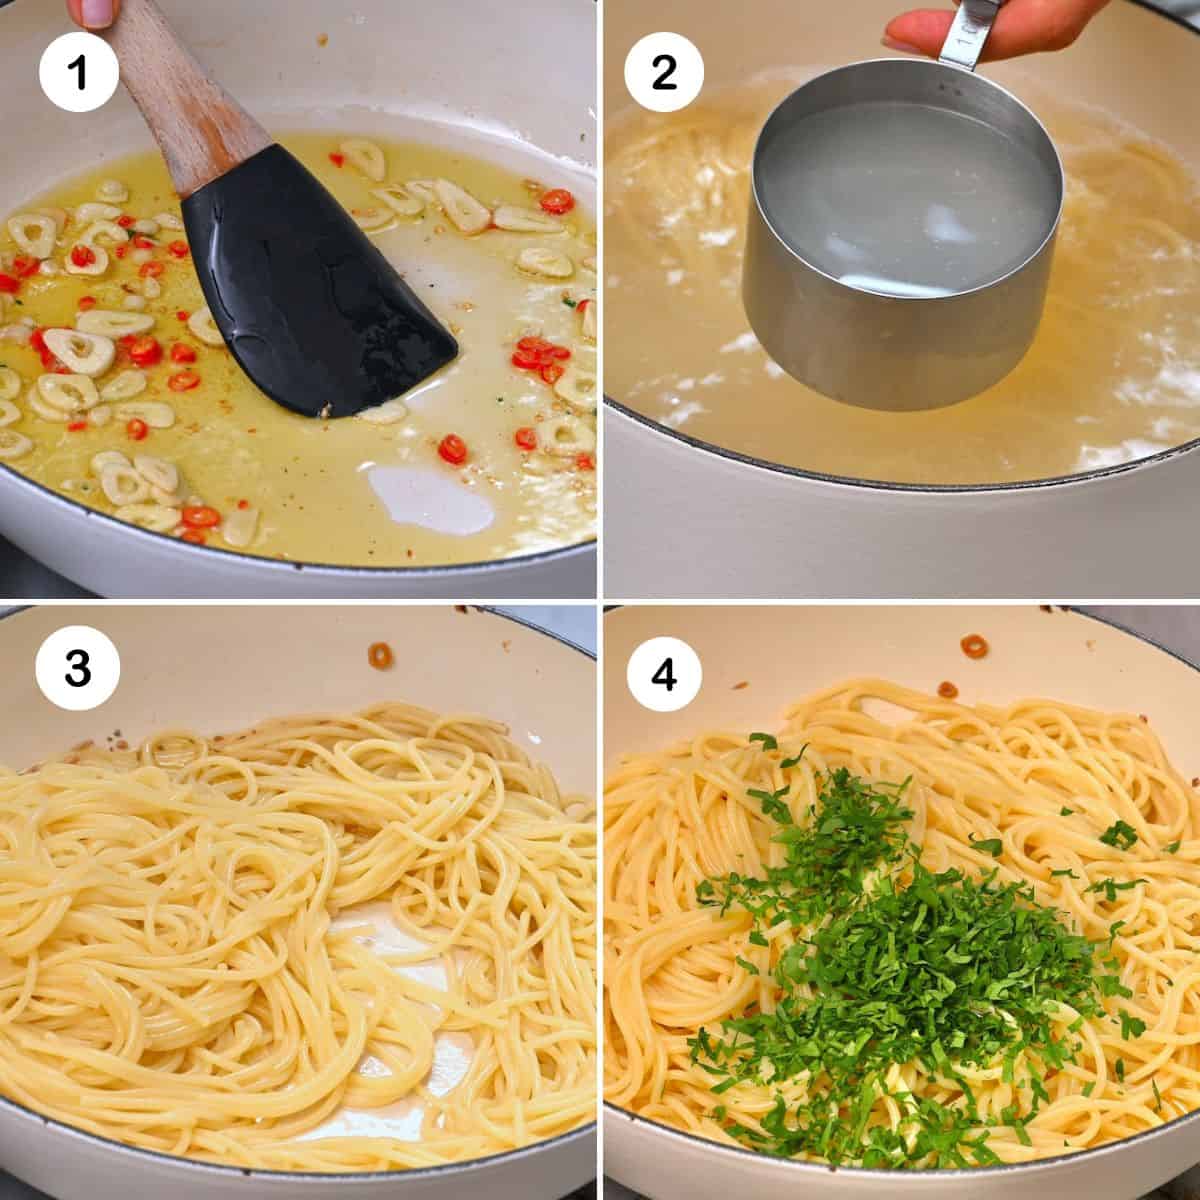 Steps for making spaghetti aglio e olio